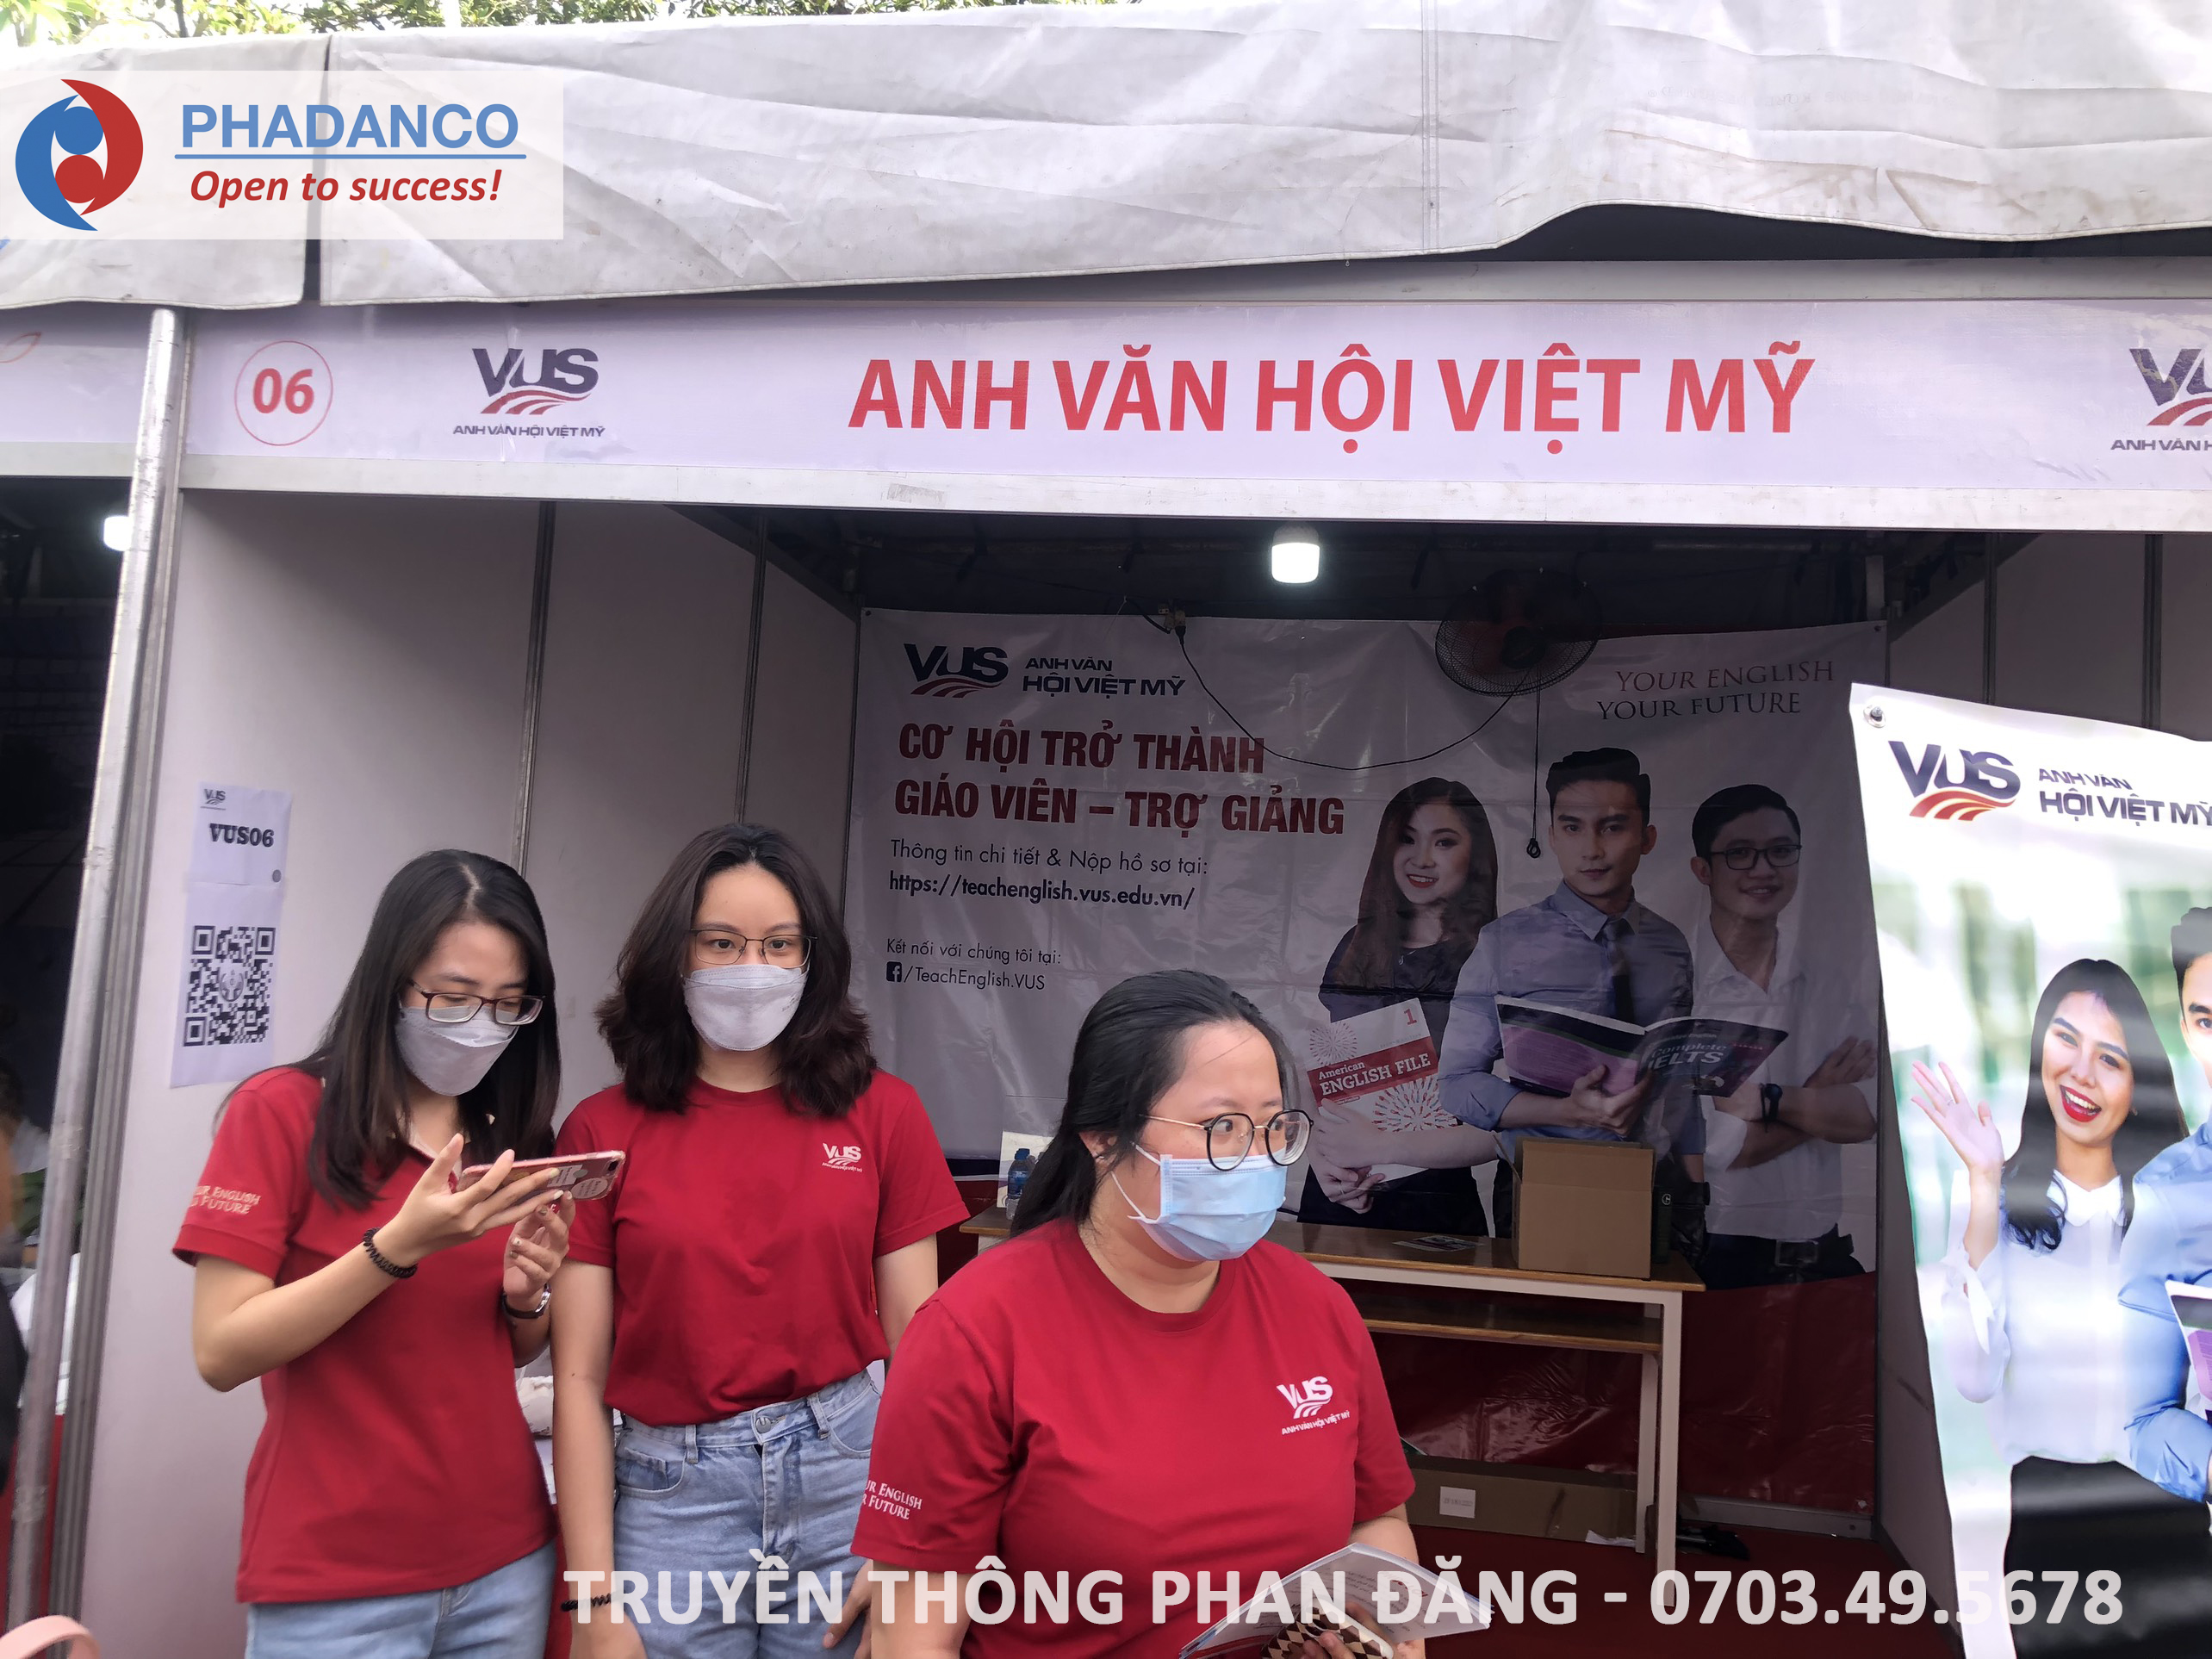 Gian hàng Anh văn hội Việt Mỹ